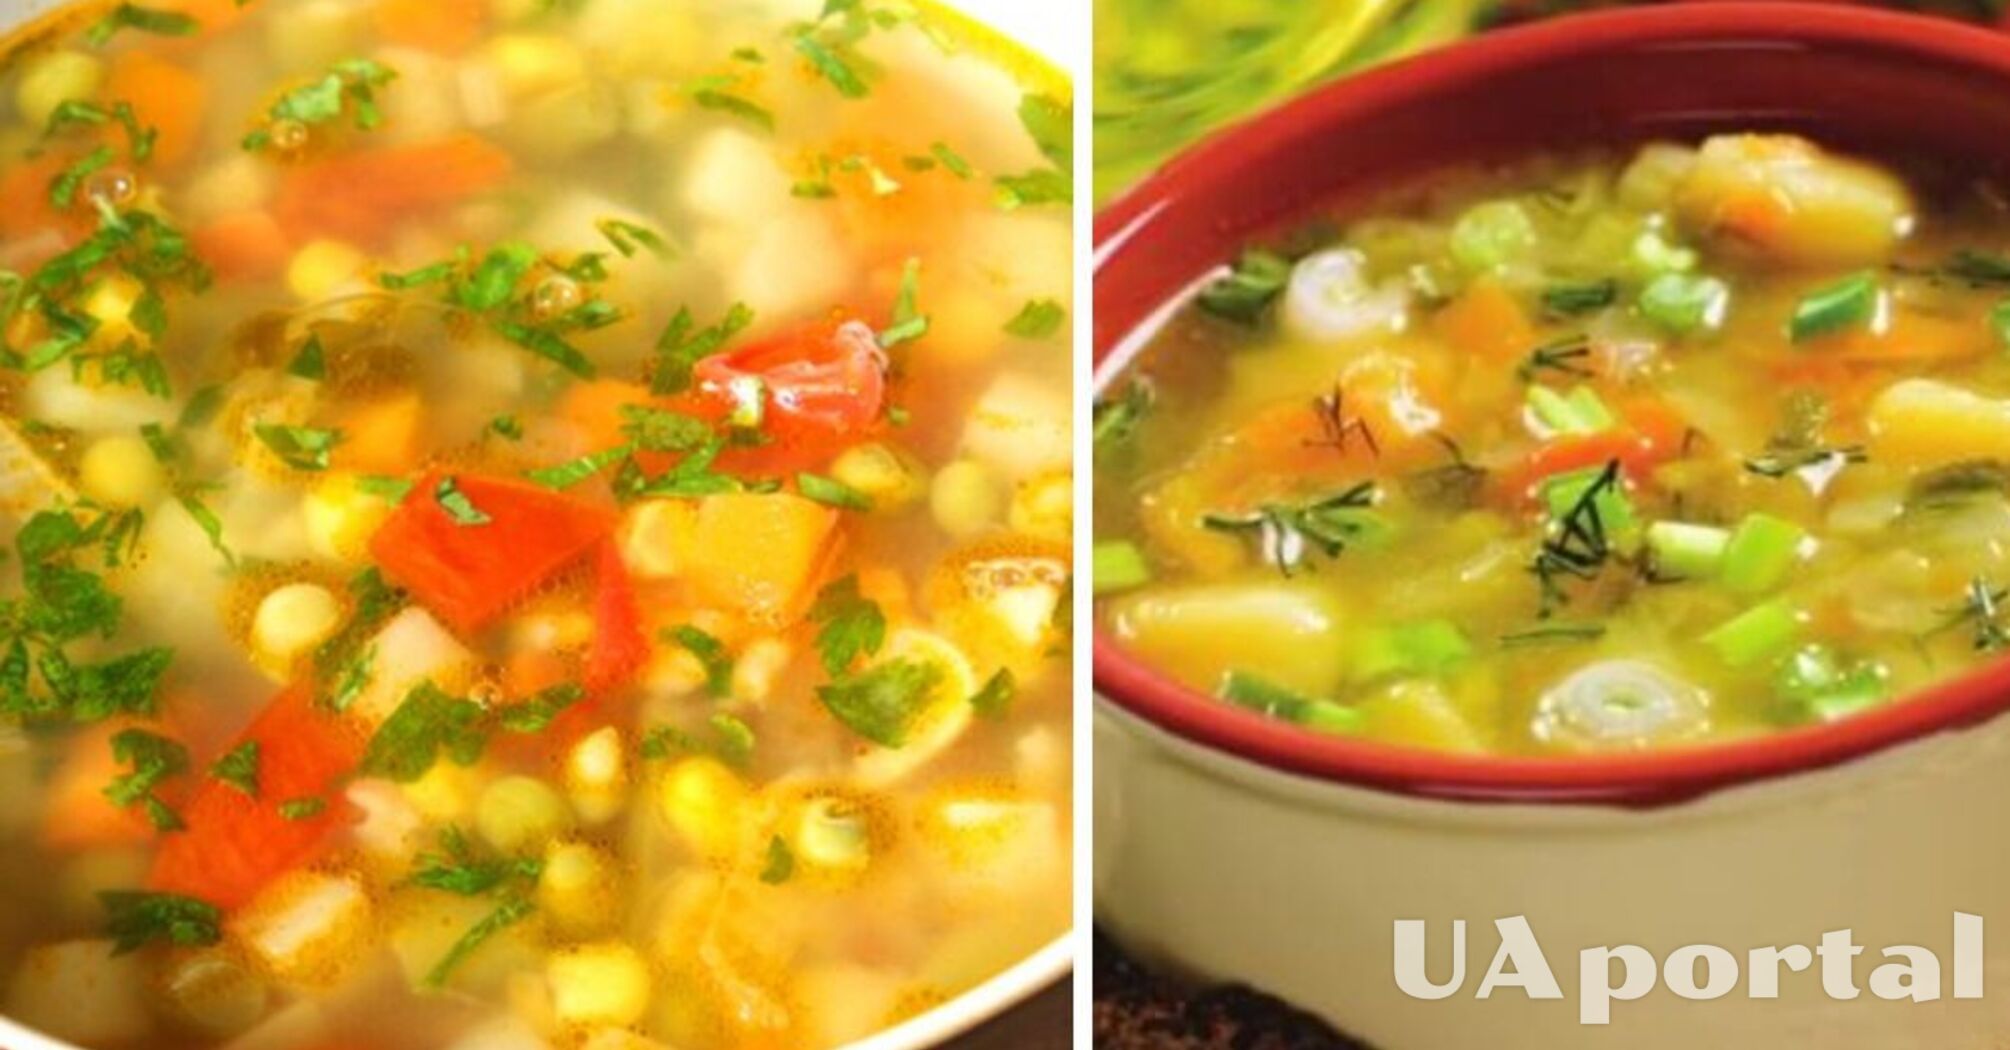 Діти будуть в захваті: рецепт супу із заморожених овочів за 30 хвилин 